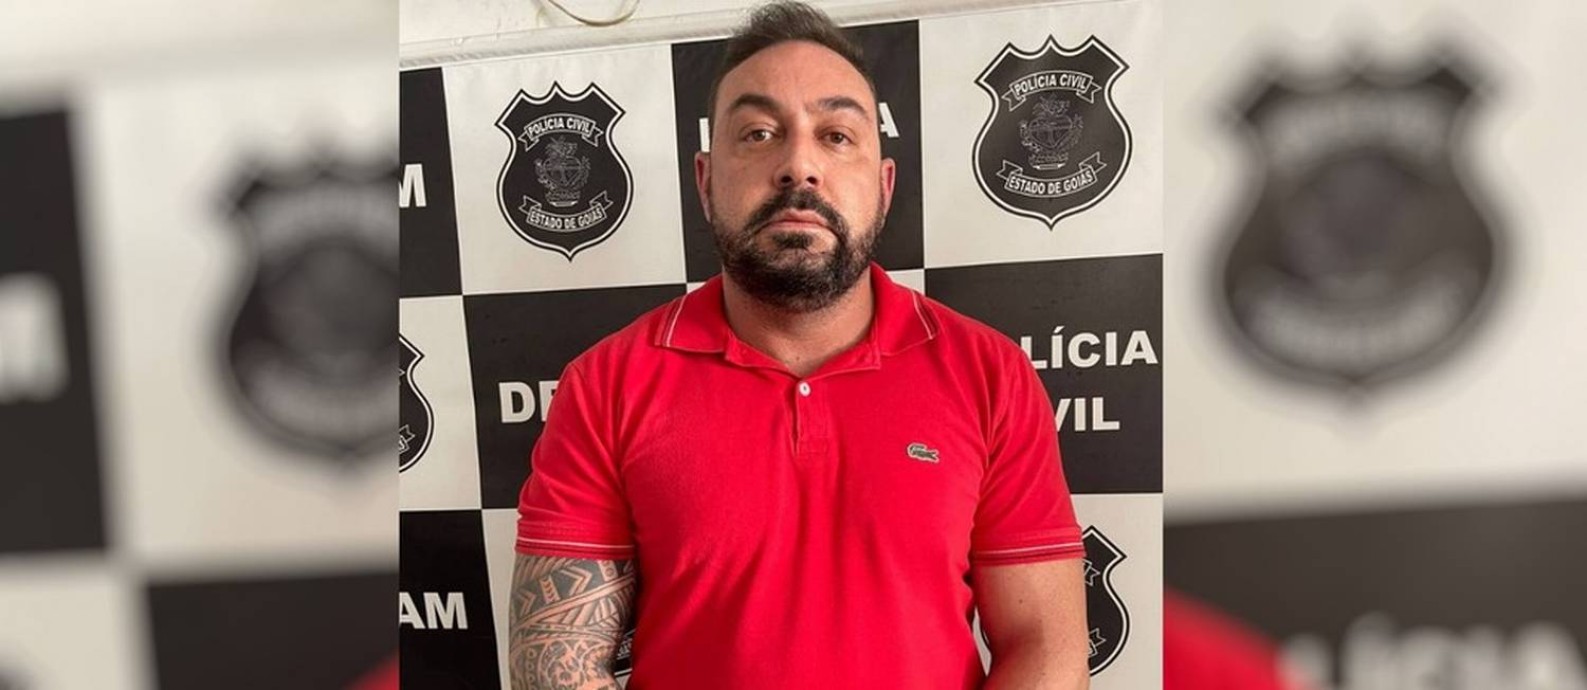 Ginecologista Nicodemos Júnior Estanislau Morais, de 41 anos, preso suspeito de violação sexual contra pacientes Foto: Divulgação/Polícia Civil